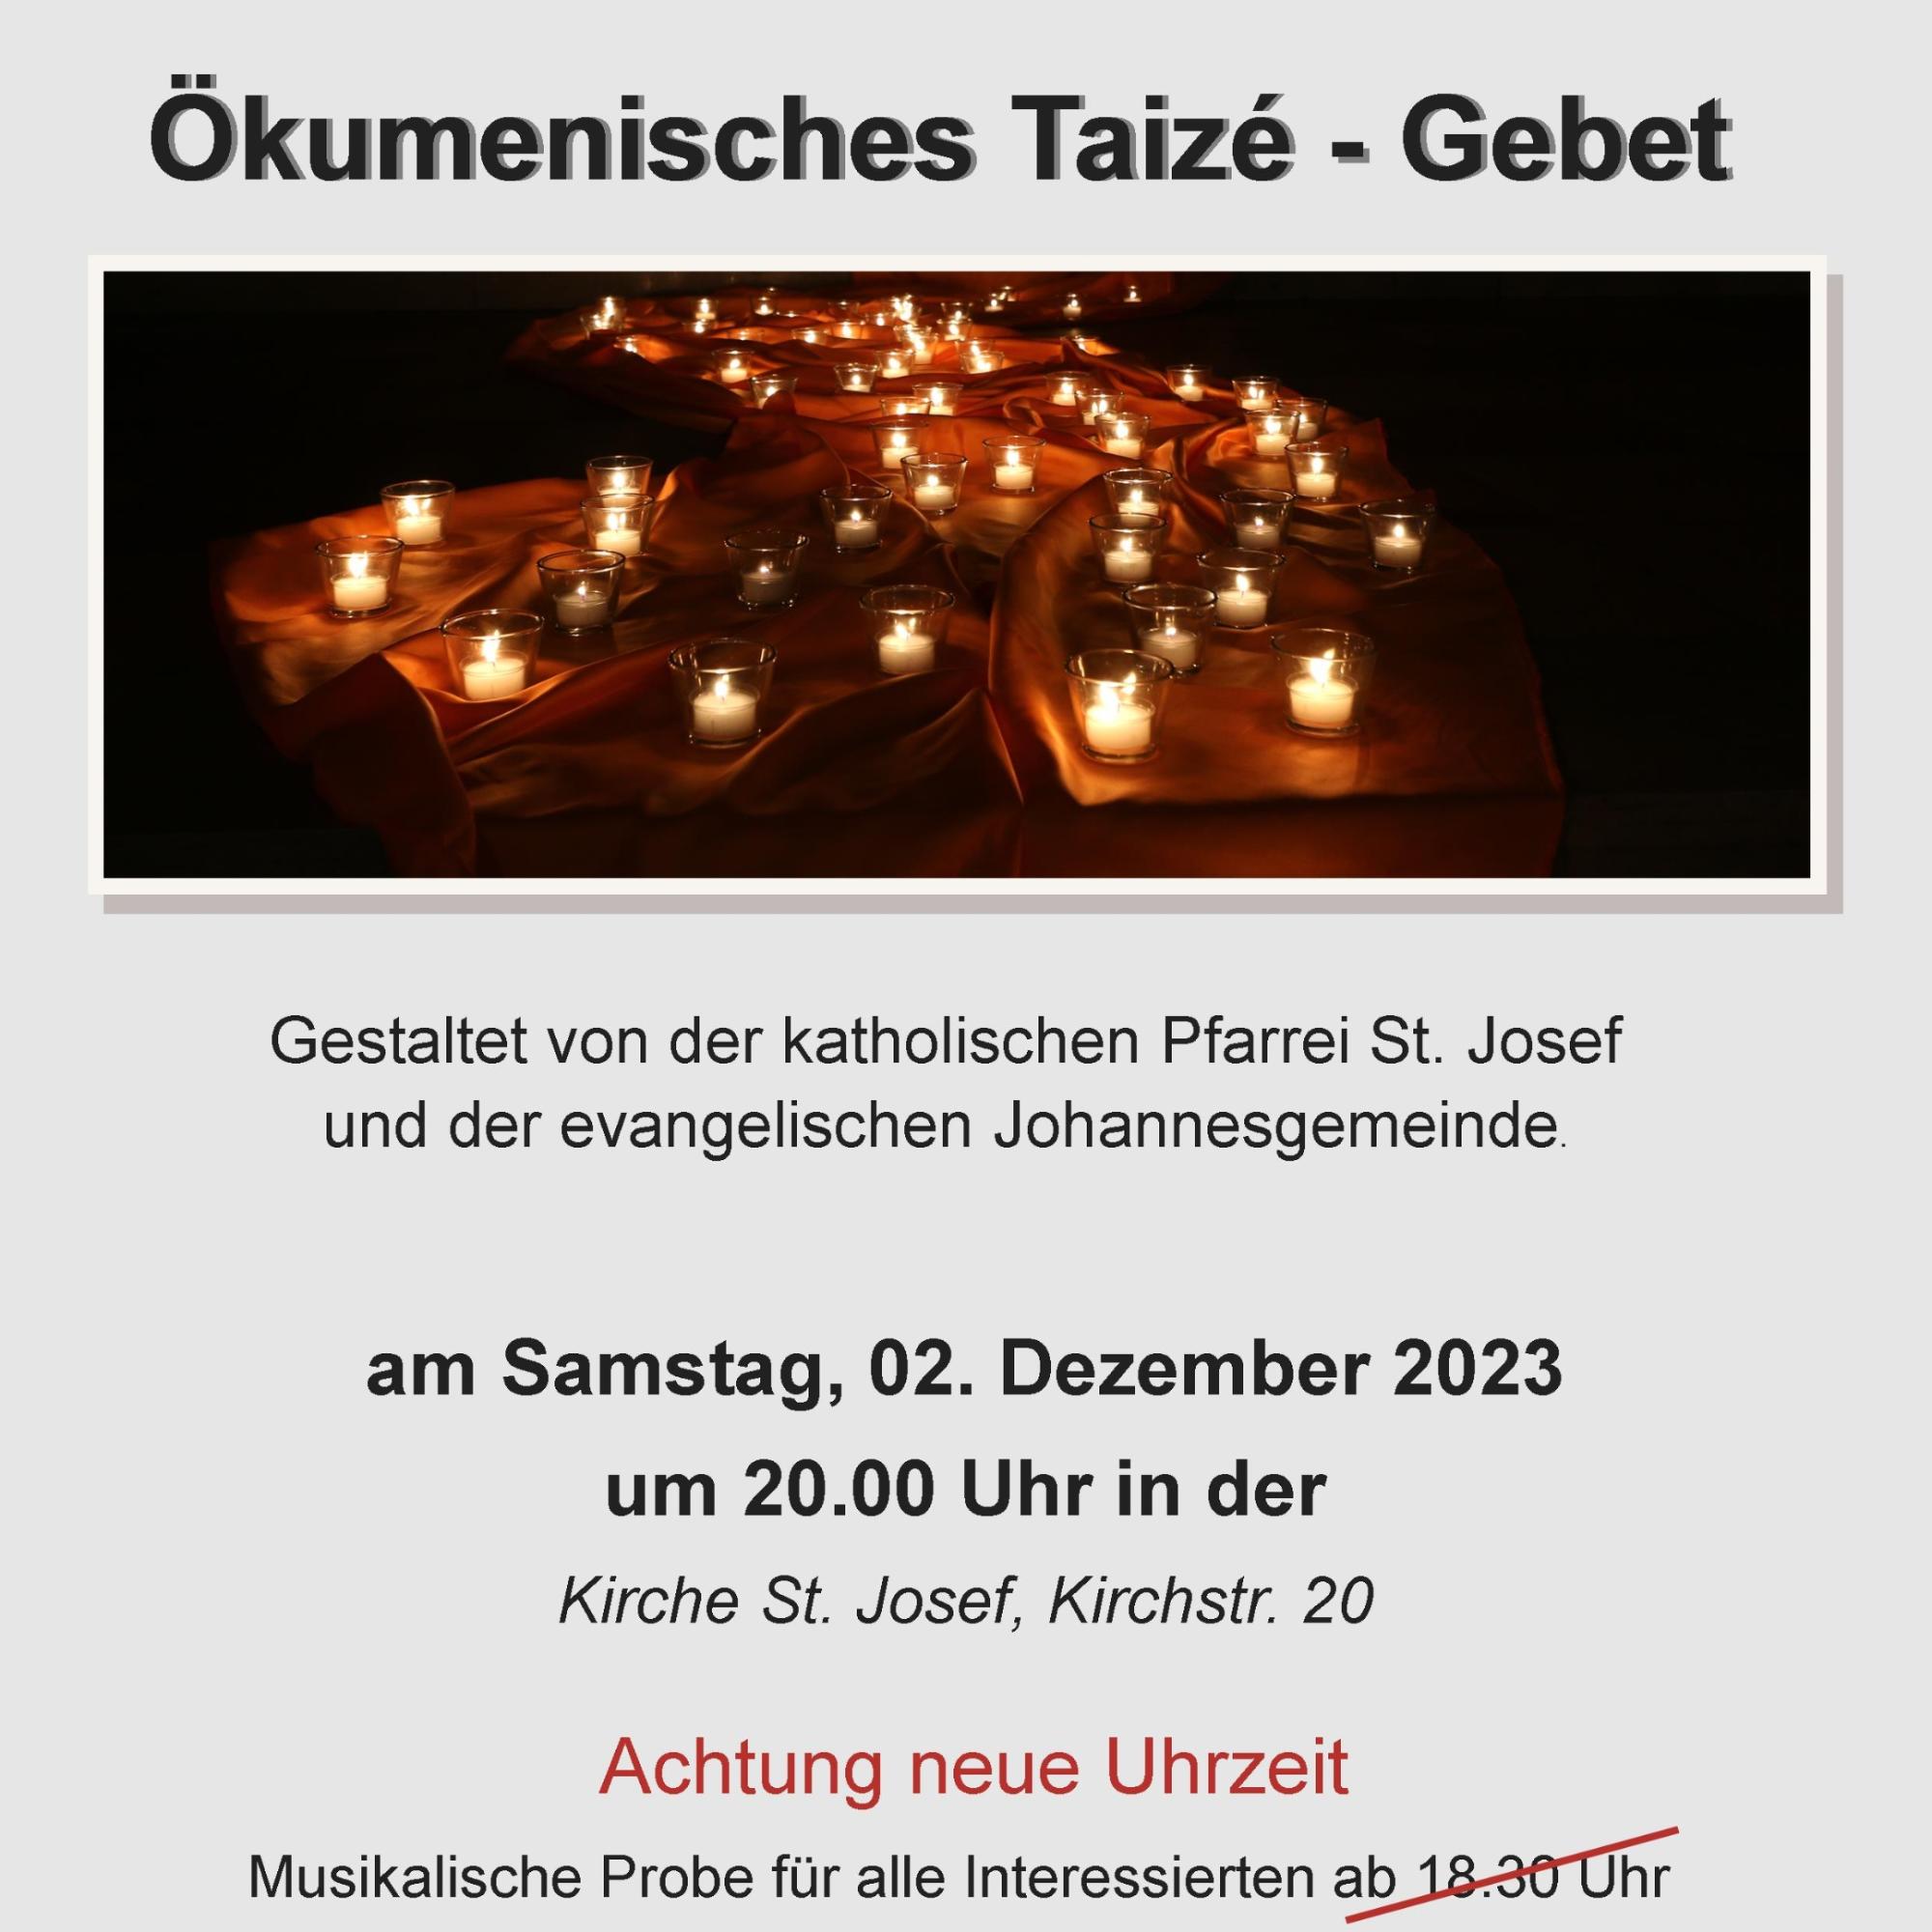 Taize-Gebet 2023 St. Josef